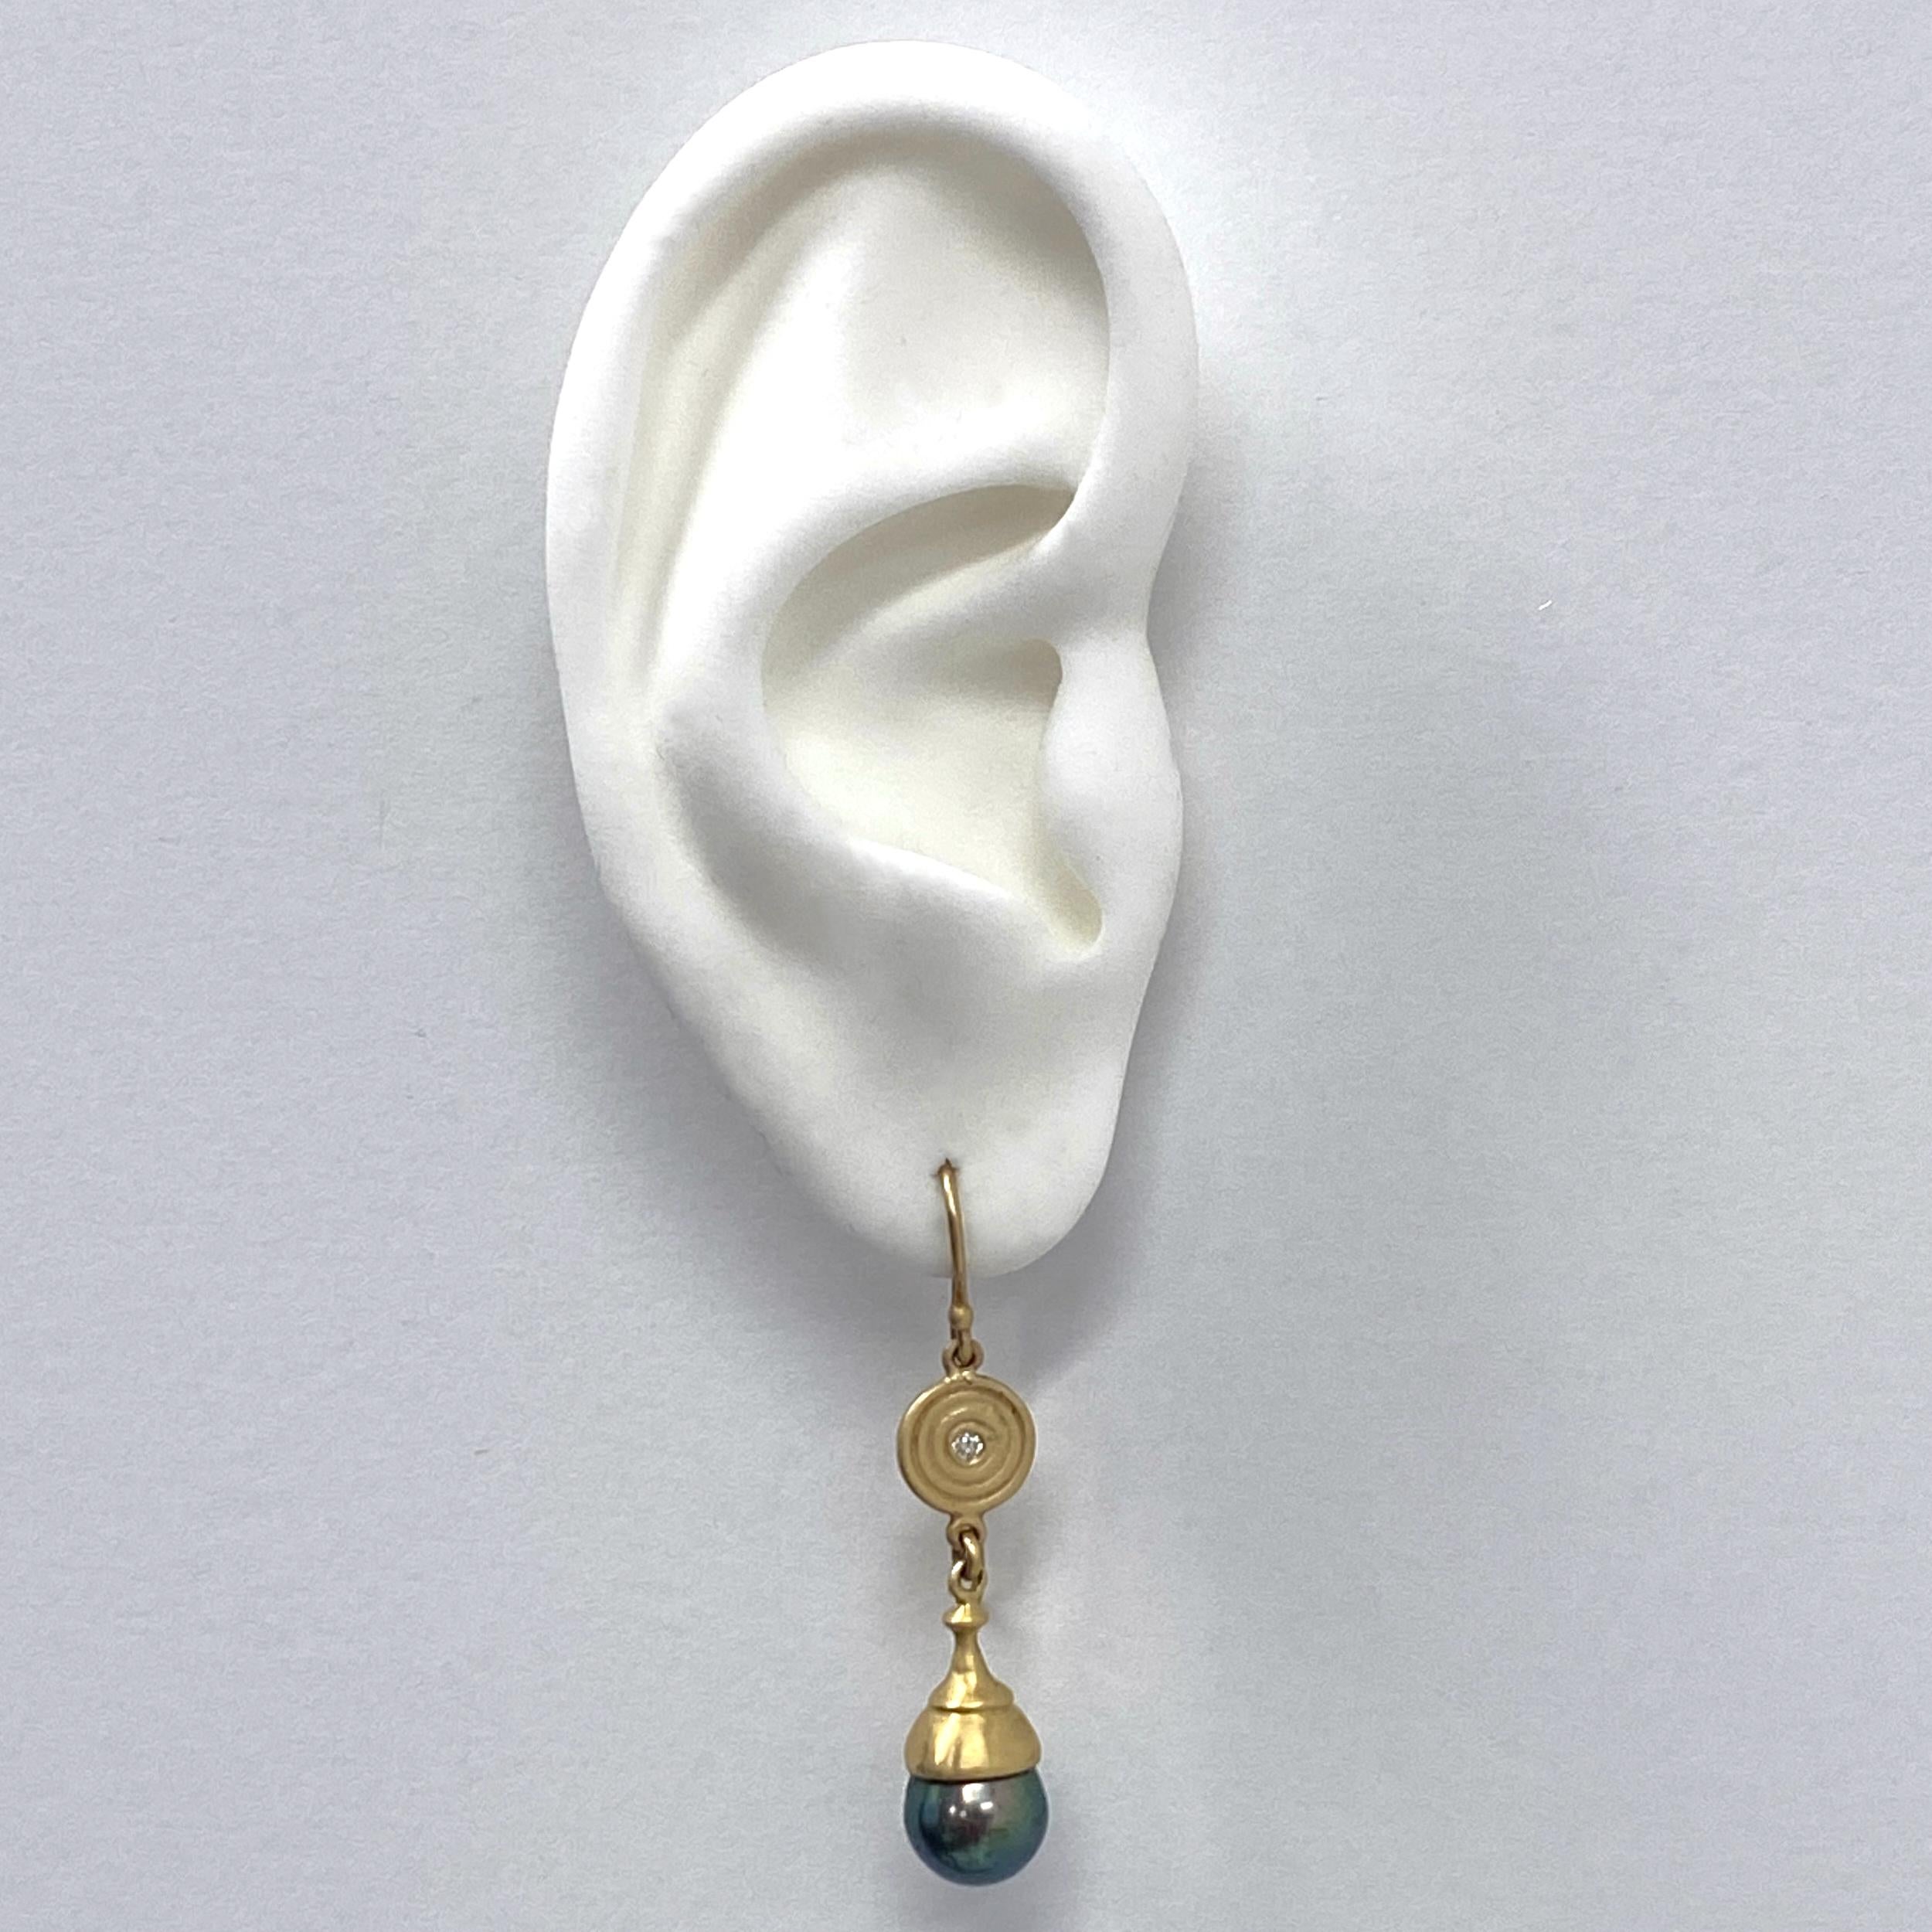 Diese wunderschönen, verspielten Ohrringe von Eytan Brandes bestehen aus zwei kleinen (8,5 - 9 mm) Tahiti-Perlen, die eine absolut verrückte Farbe haben - tiefes Pfauengrün mit violetten Untertönen.

Eytan hat die Kappen speziell für die Perlen